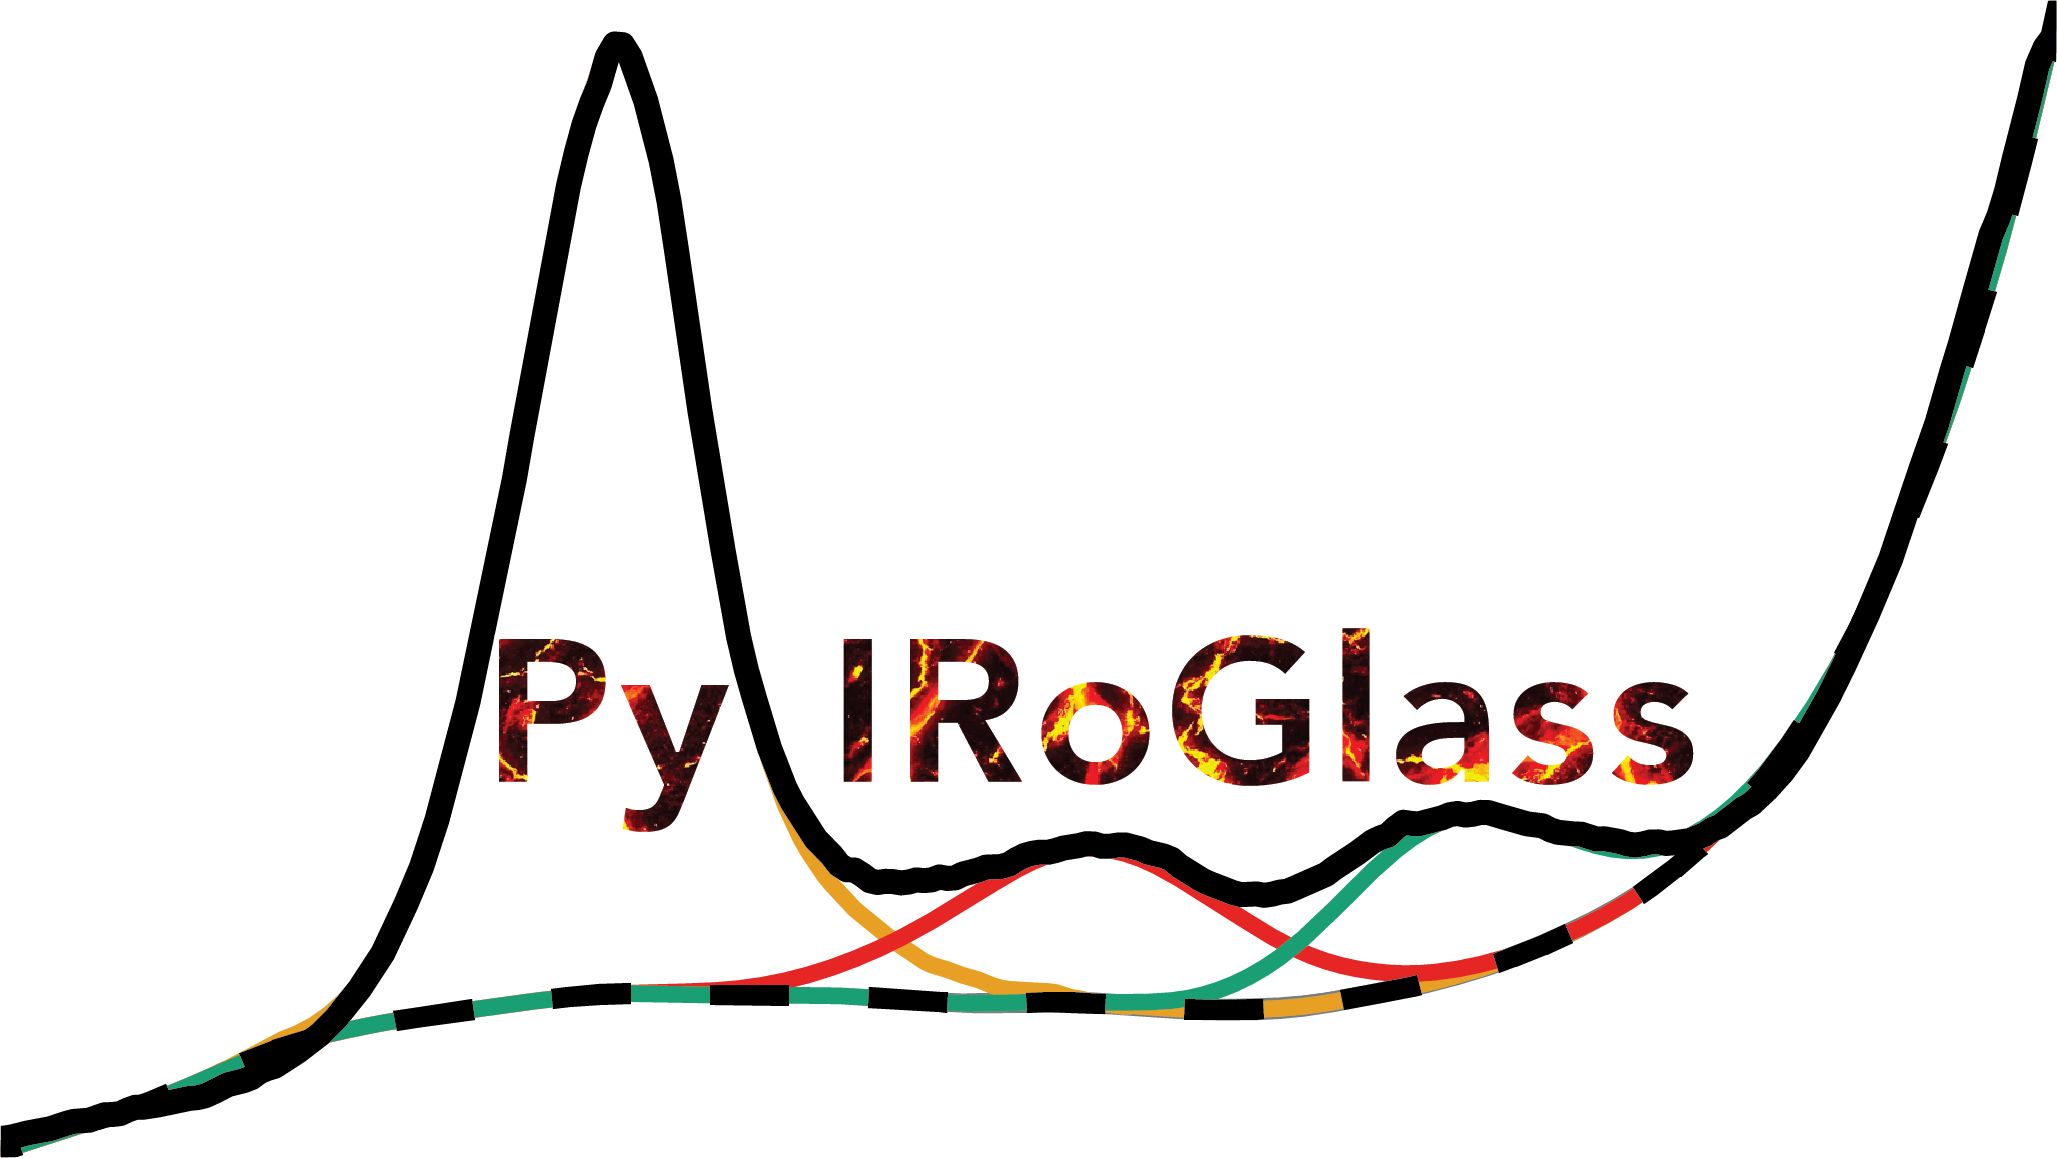 _images/PyIRoGlass_logo.png